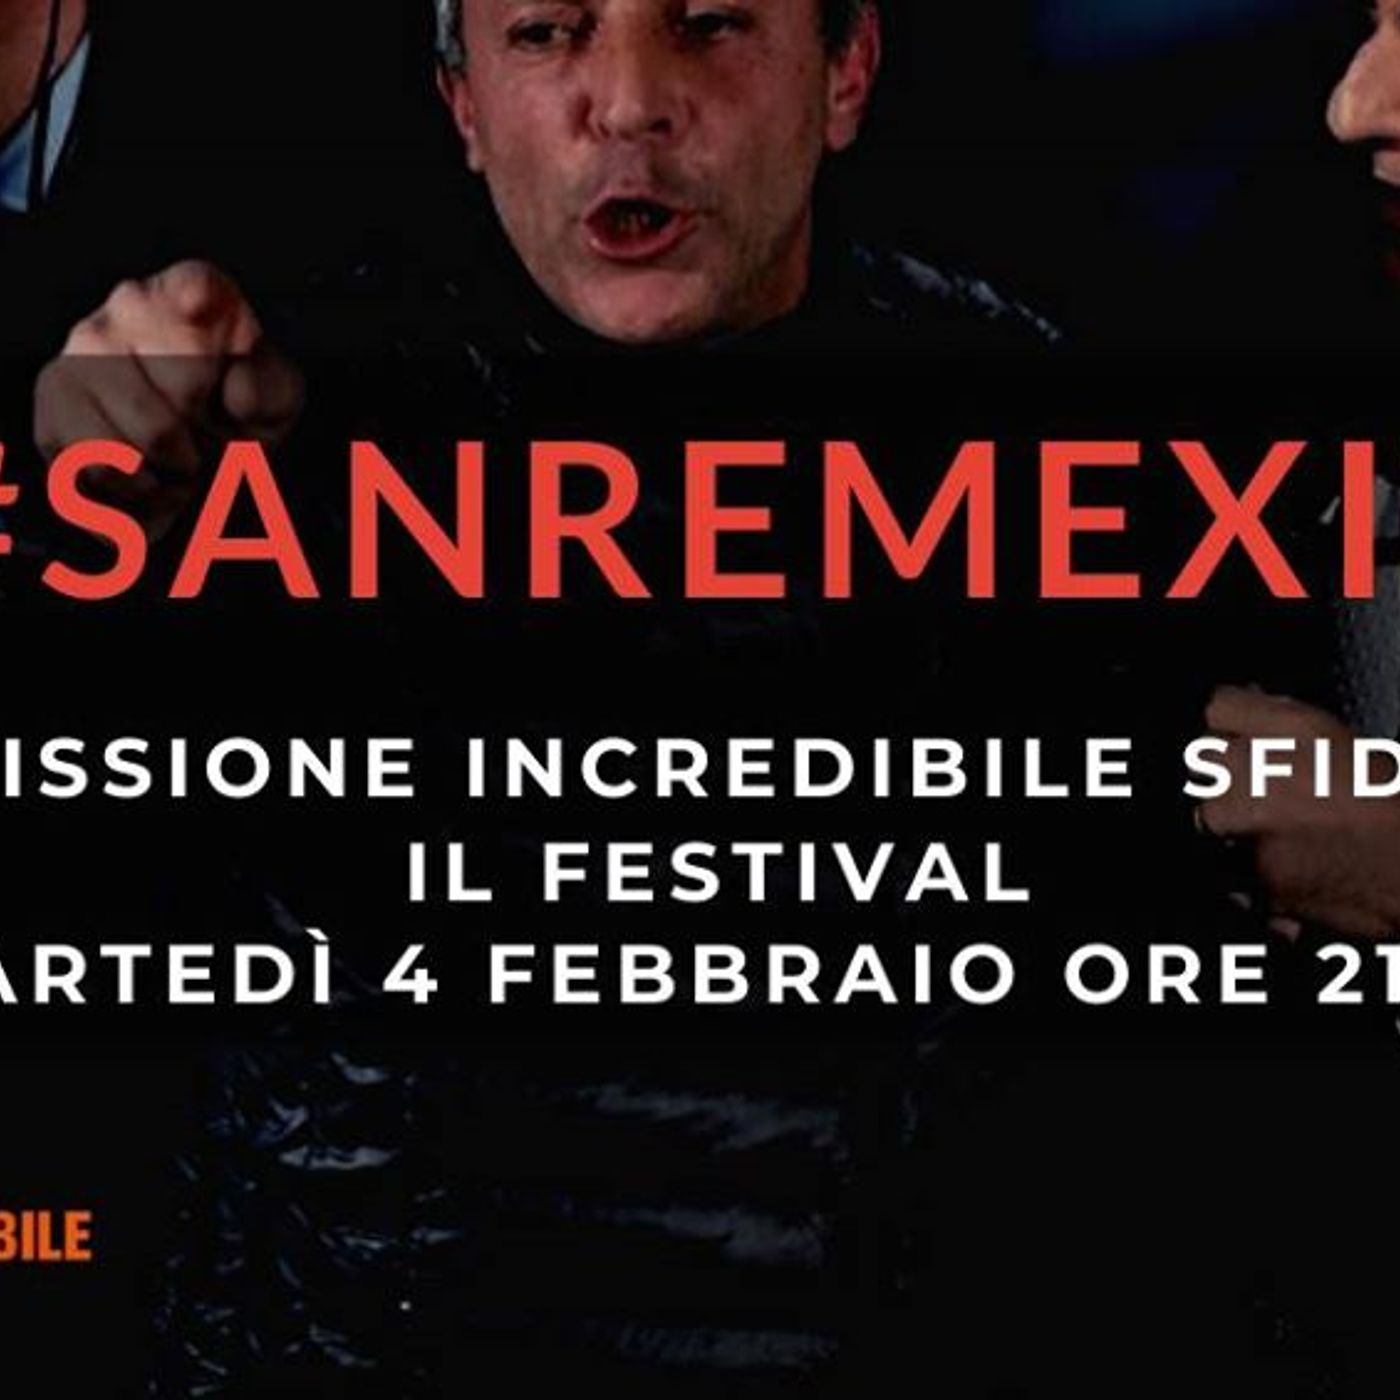 Sanremexit, Missione Incredibile sfida Sanremo